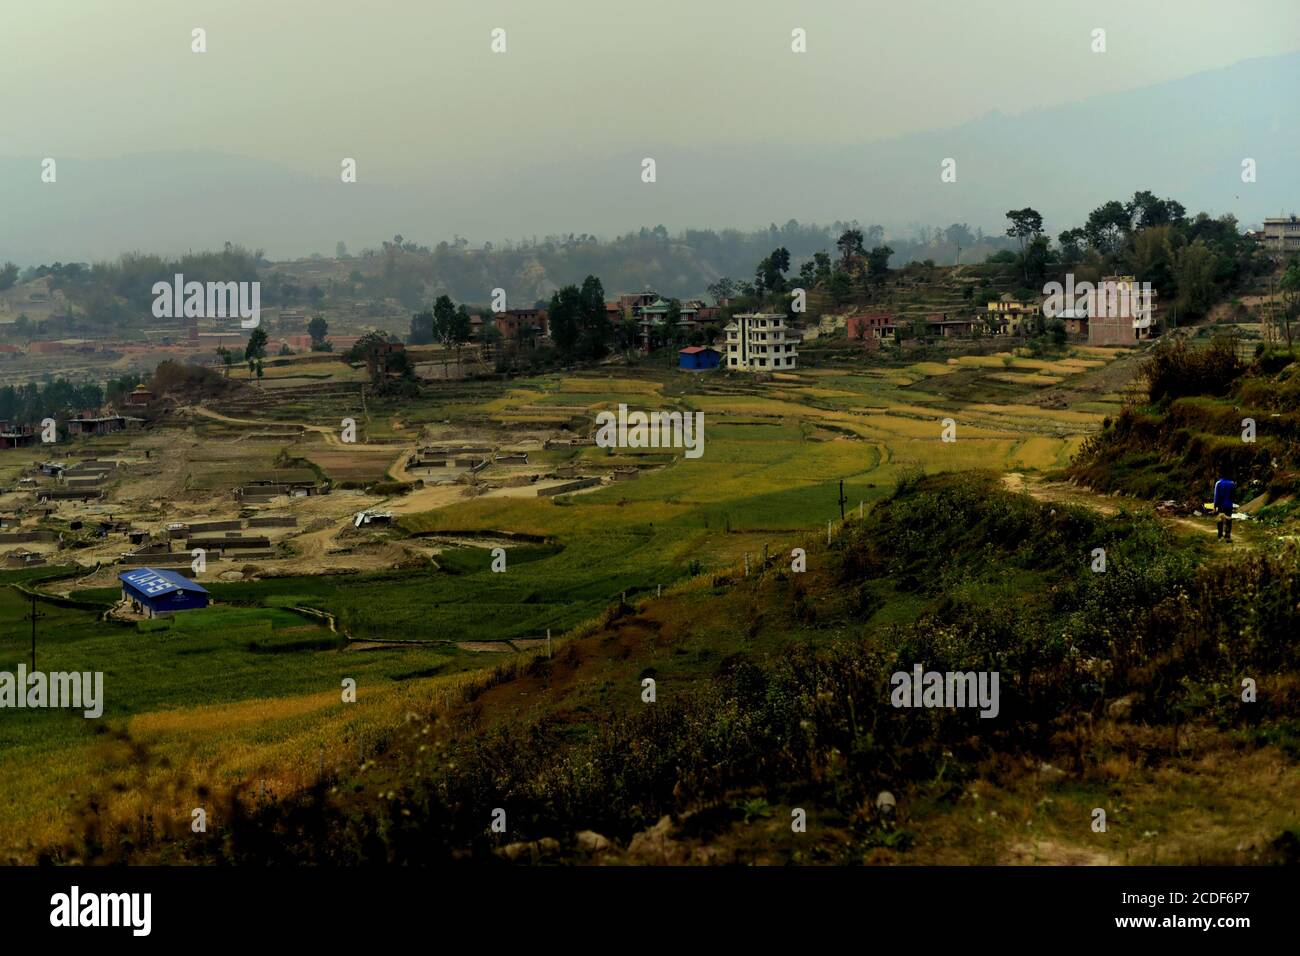 Ein Mann, der auf einem ländlichen Weg geht, mit Blick auf landwirtschaftliche Felder, die teilweise in eine Baustofffabrik umgewandelt wurden, am Stadtrand von Kathmandu, Nepal. Stockfoto